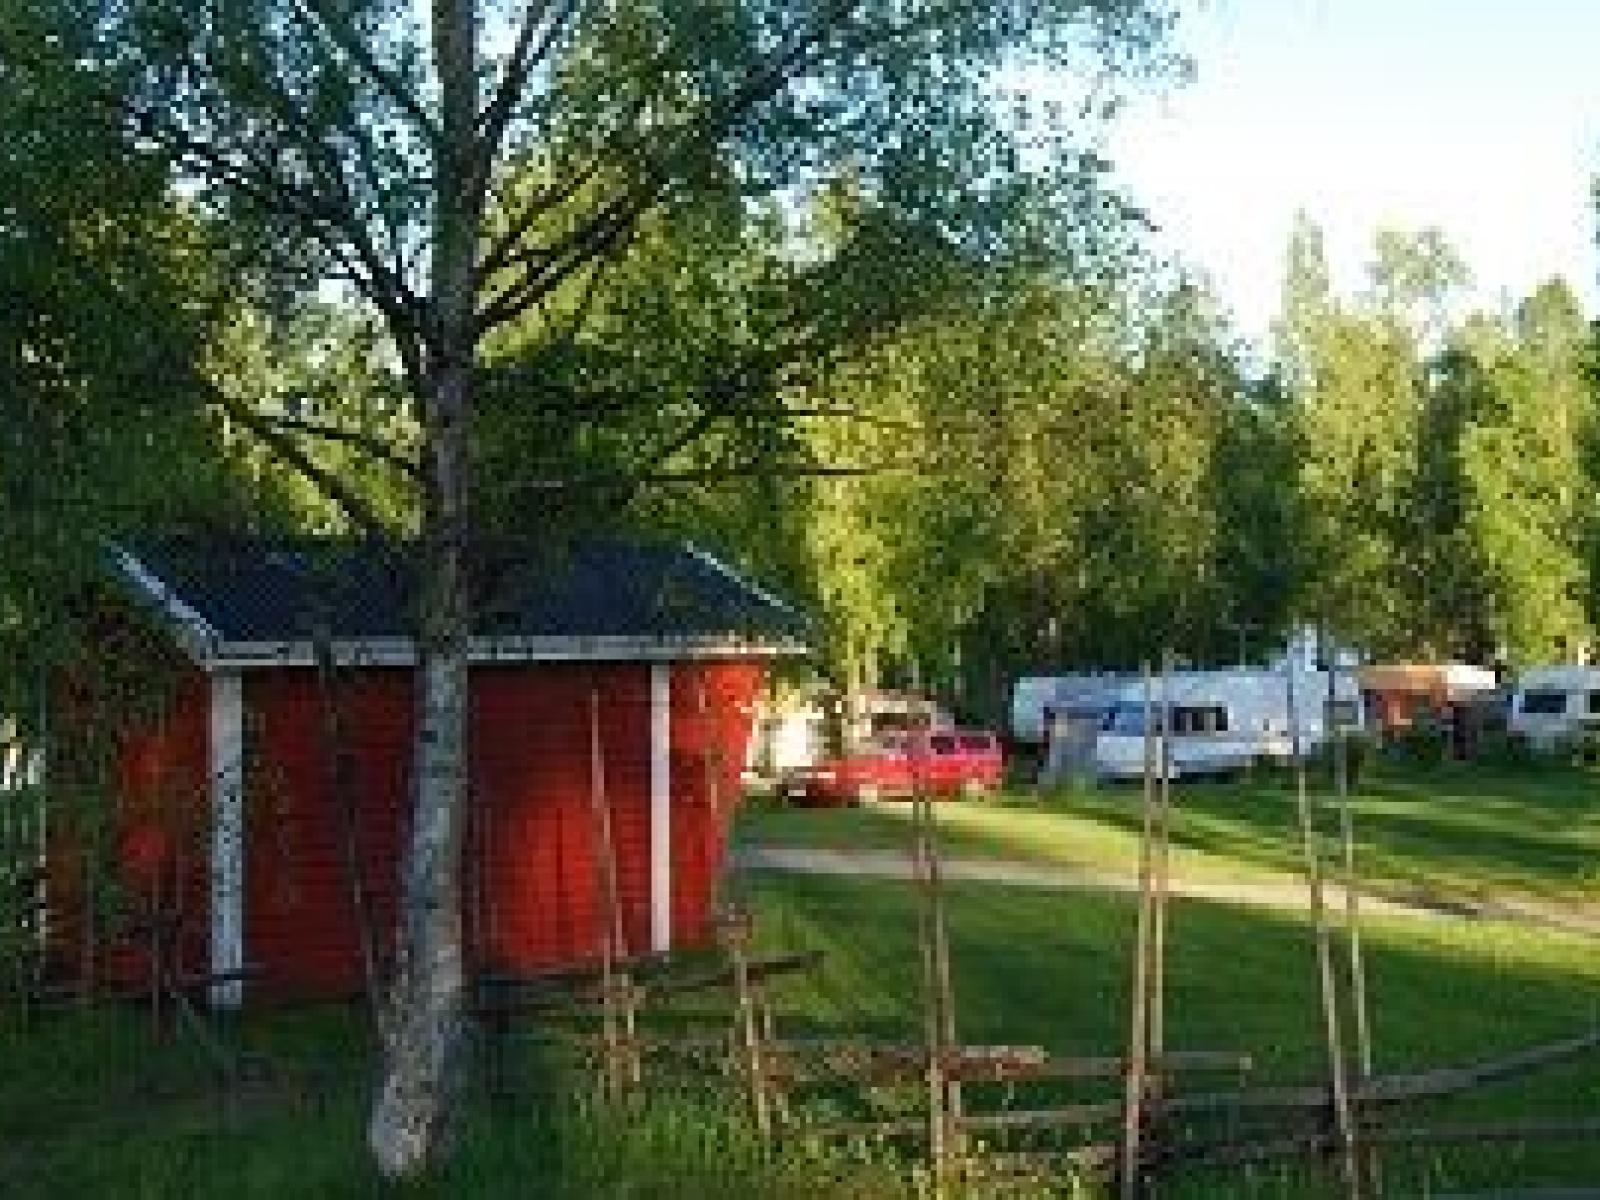 Kerstins Udde Spa Camping Stugby & Konferens/Ferienhaäuser (copy)